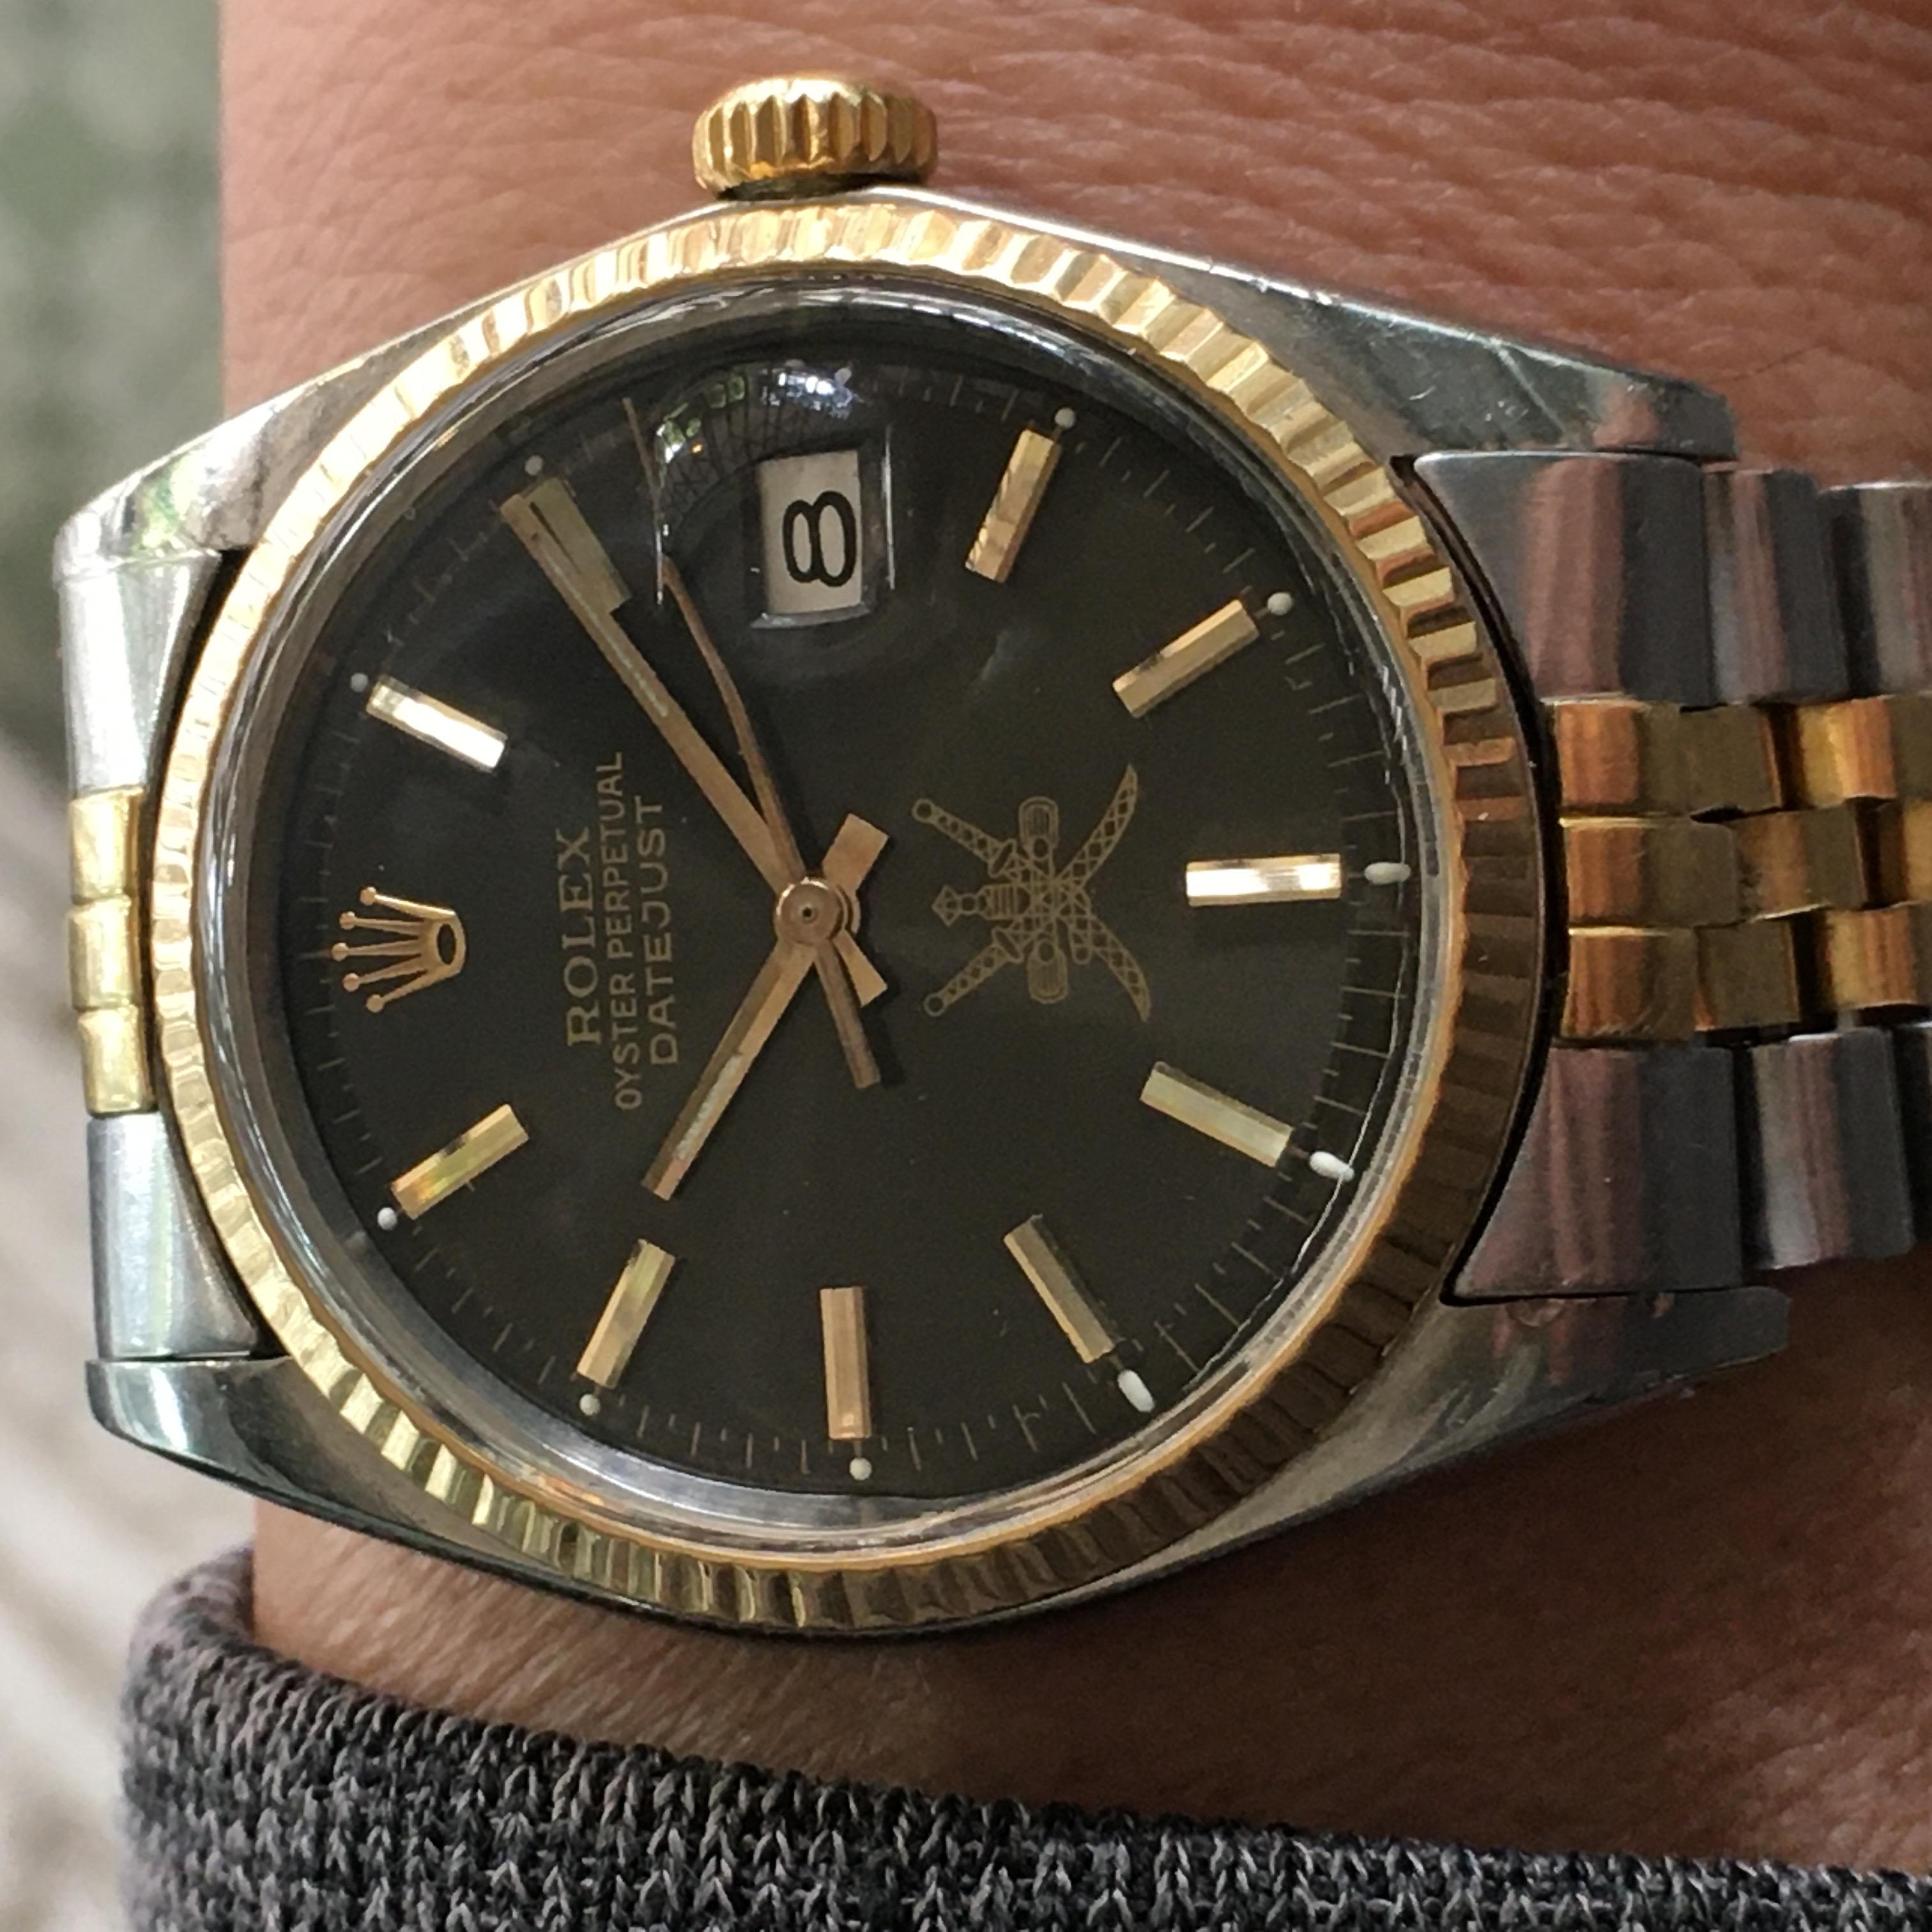 Il s'agit d'une montre-bracelet Rolex Datejust vintage de 1974 pour homme. Elle présente un boîtier en acier inoxydable de 36 mm avec une lunette cannelée en or et un cadran noir Steele avec plusieurs aiguilles et un cadran de 12 heures. La montre